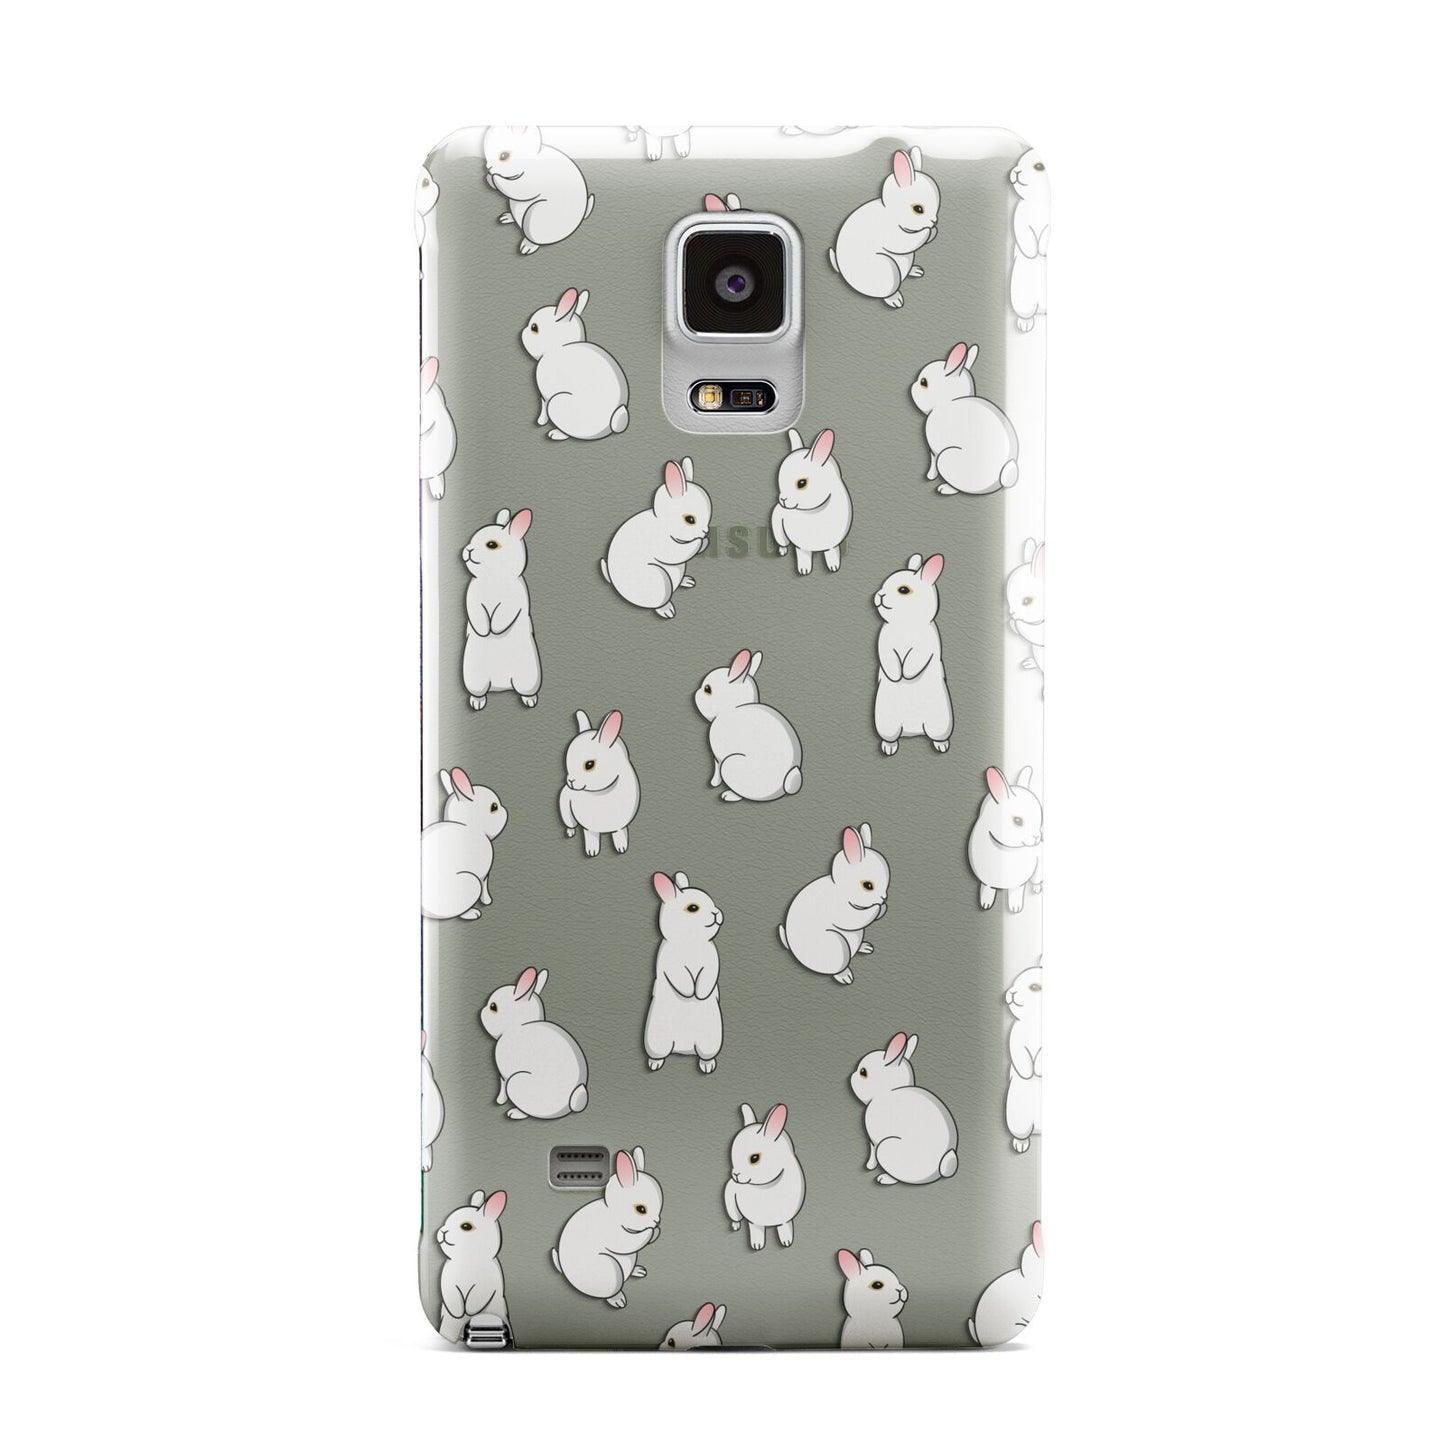 Bunny Rabbit Samsung Galaxy Note 4 Case